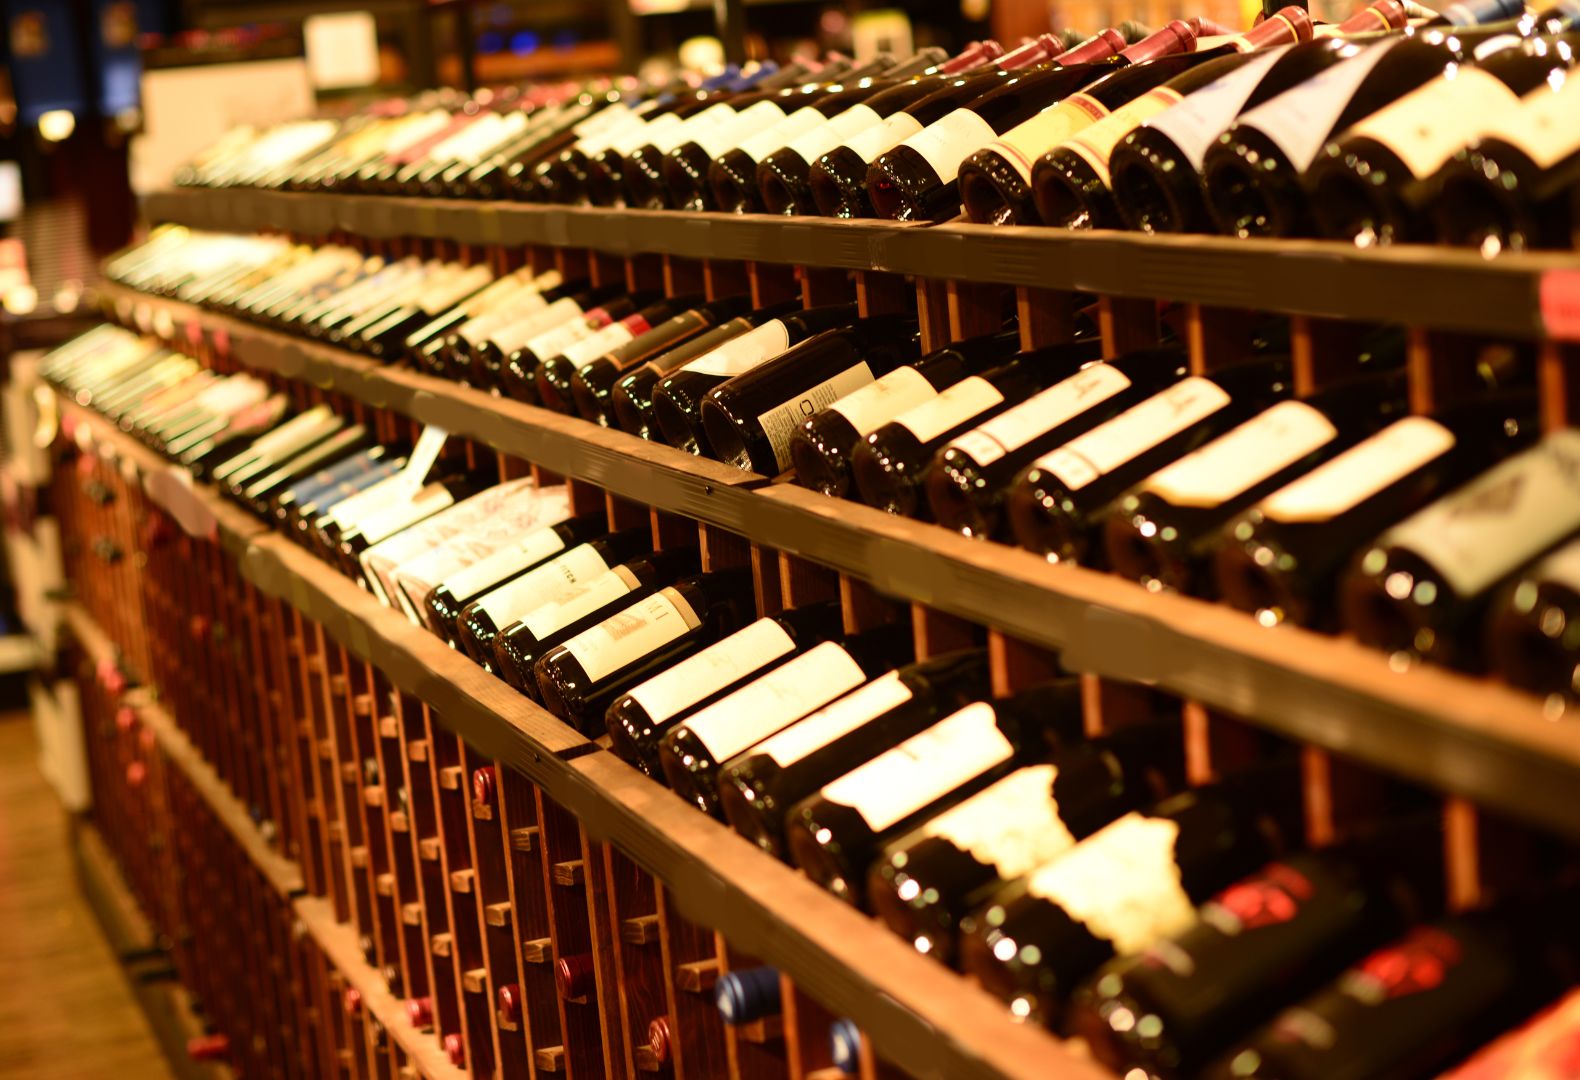 bouteilles de vin stockees inclinees dans une cave a vin